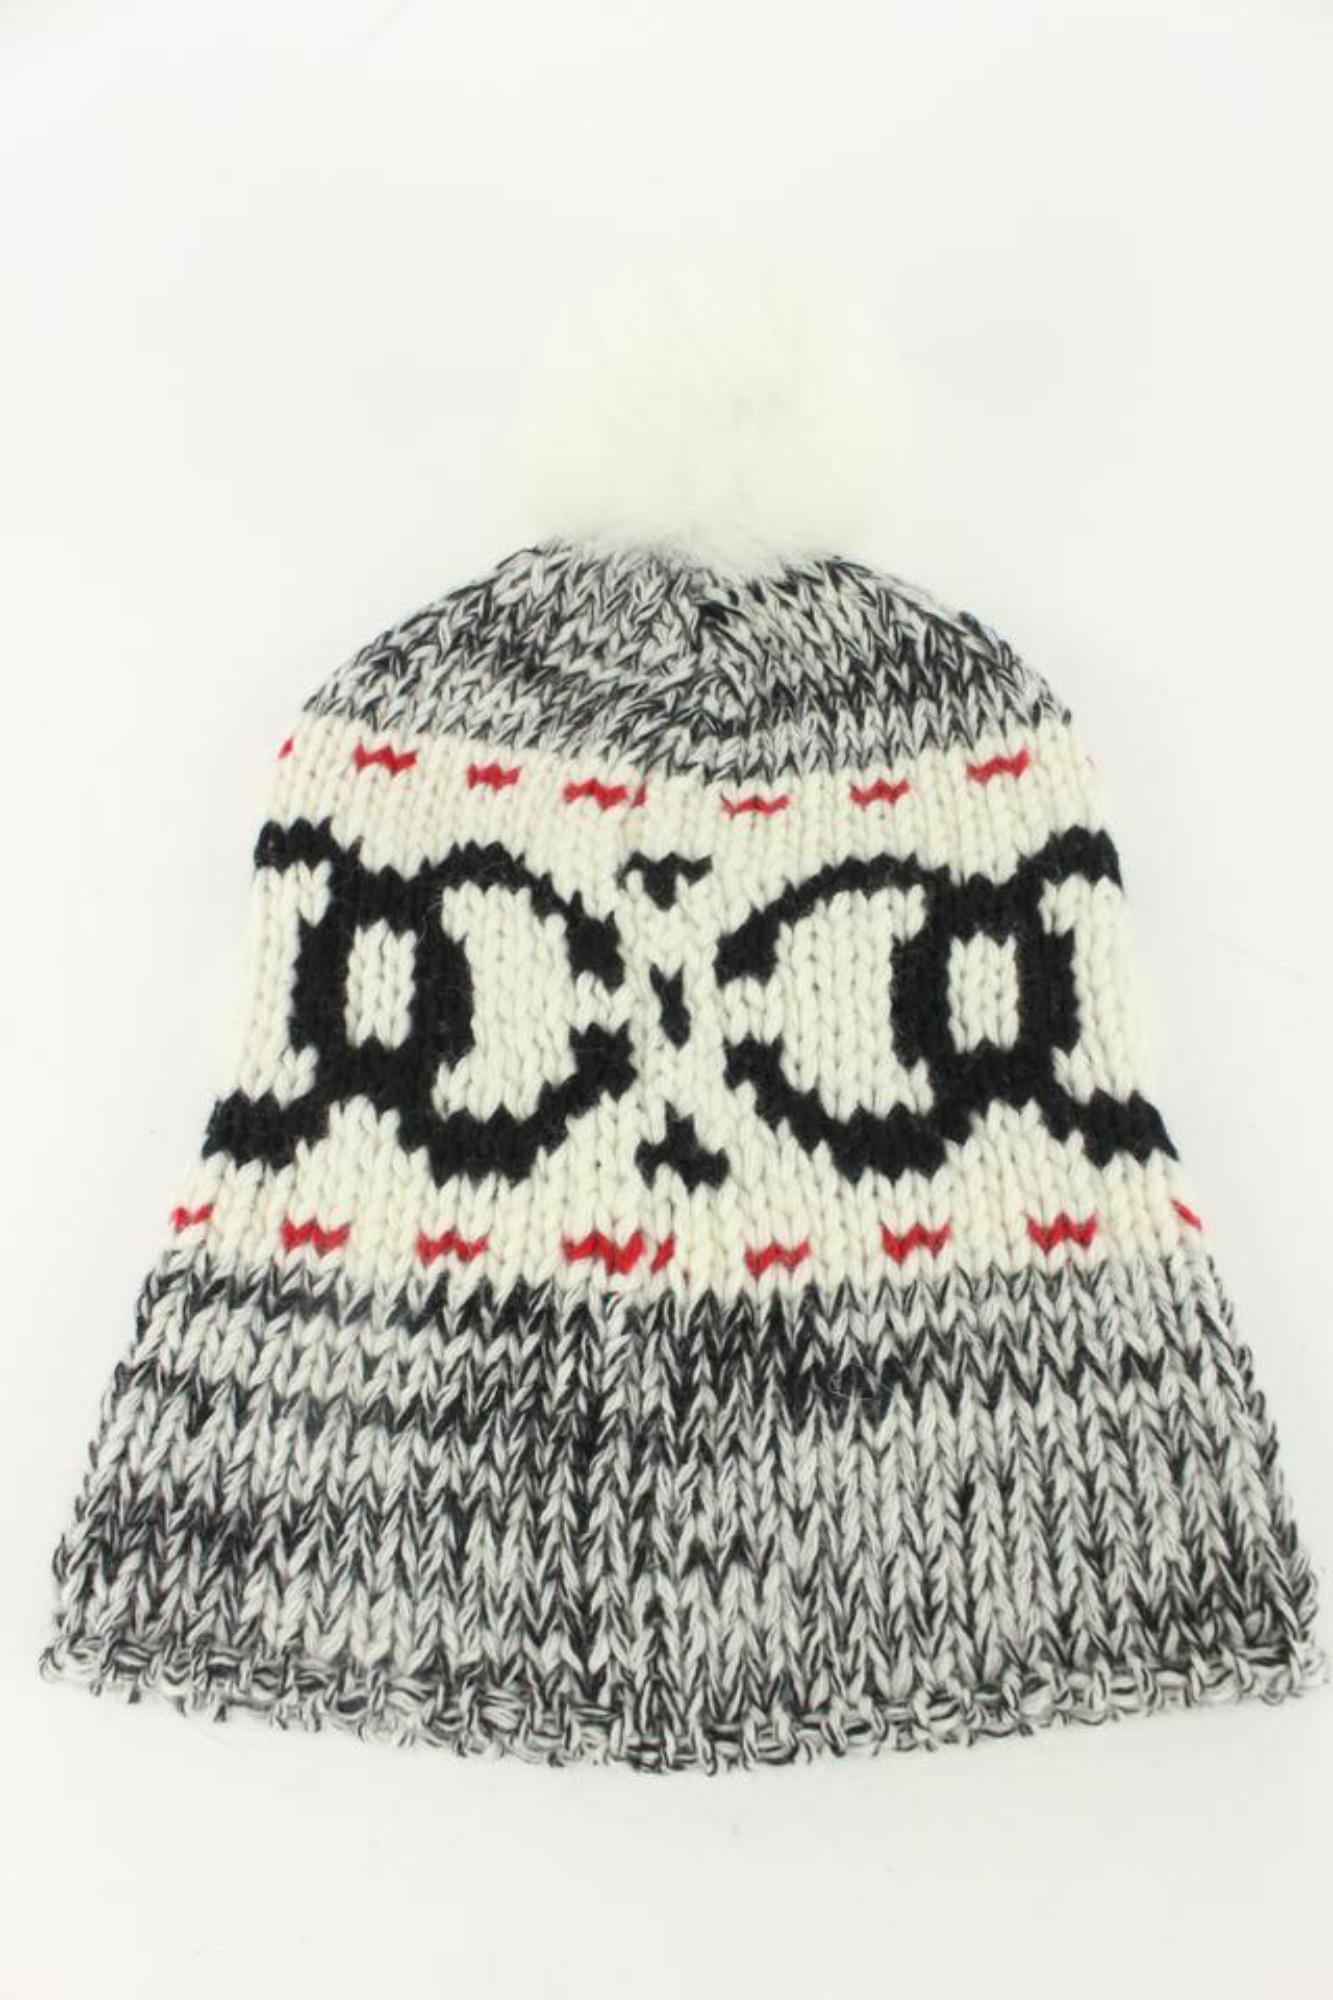 Chanel Black x White x Red CC Pom Pom Beanie Ski Hat Skully Cap 1213c6 4